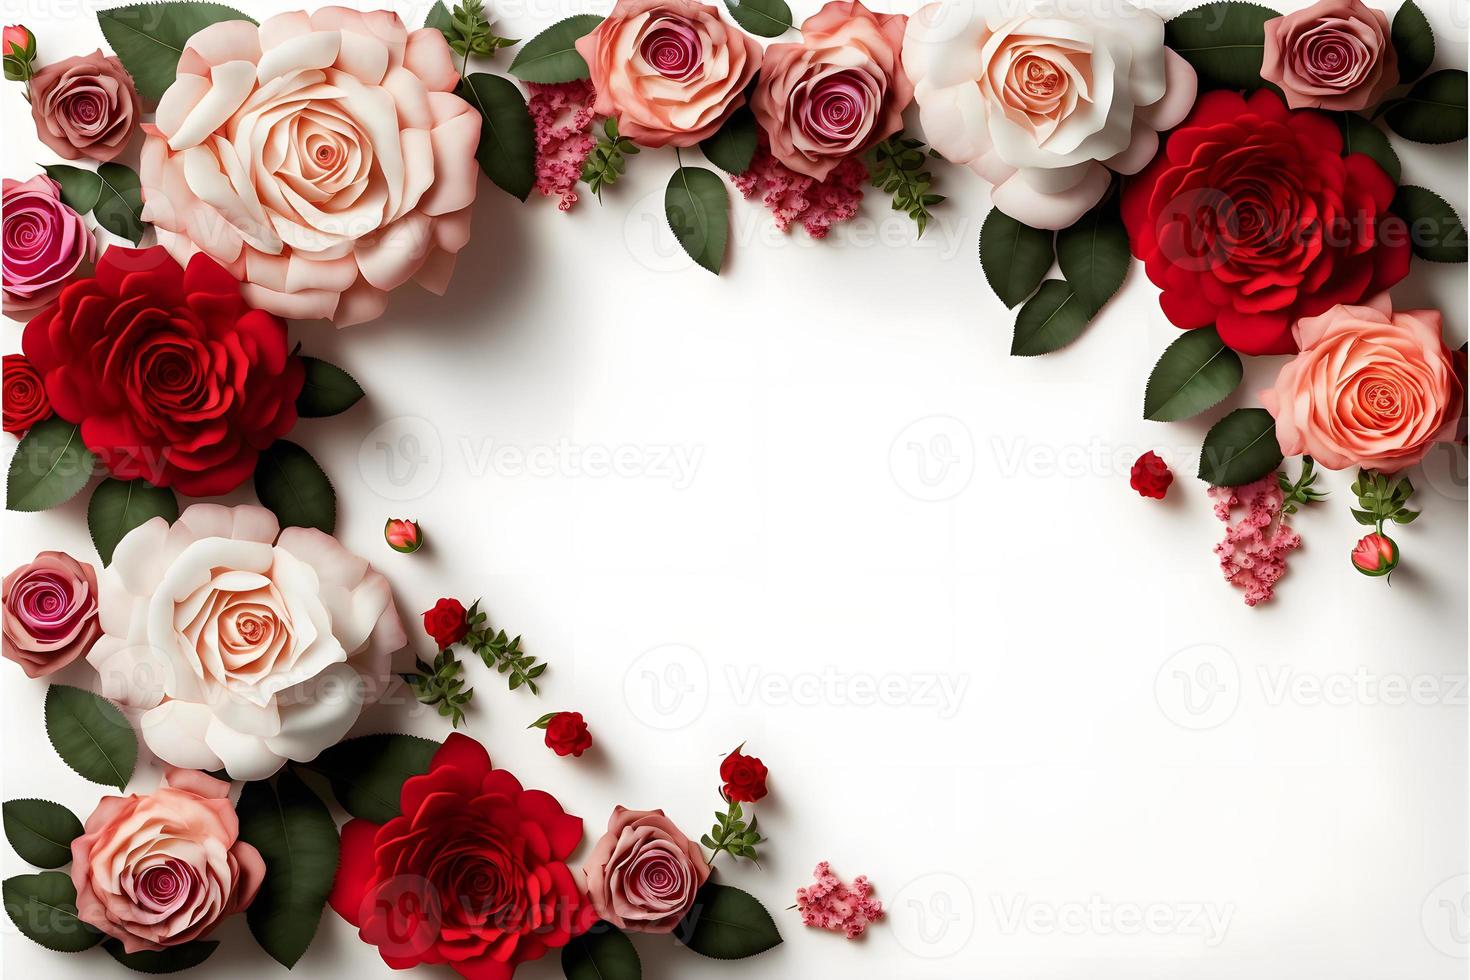 uma imagem impressionante com uma flor rosa vermelha e rosa com um espaço em branco no meio, perfeita para adicionar texto ou sobrepor gráficos. esta foto é ideal para uso em mídias sociais, sites